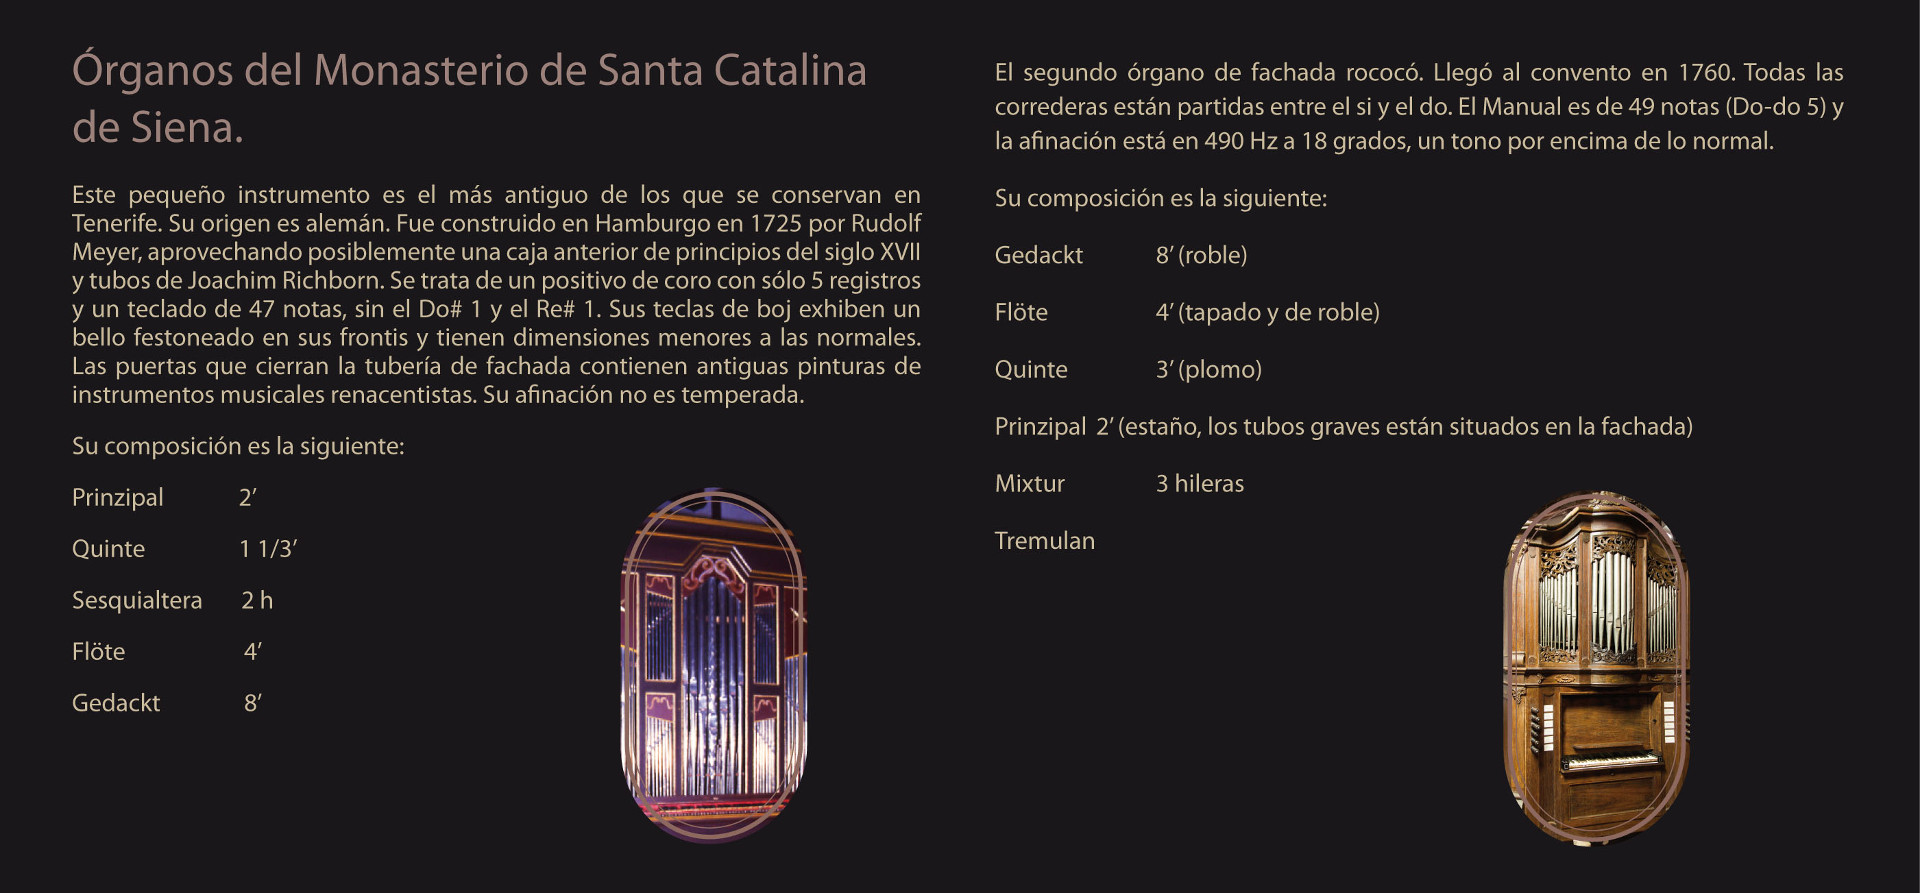 La Laguna - Órganos del Monasterio de Santa Catalina de Siena